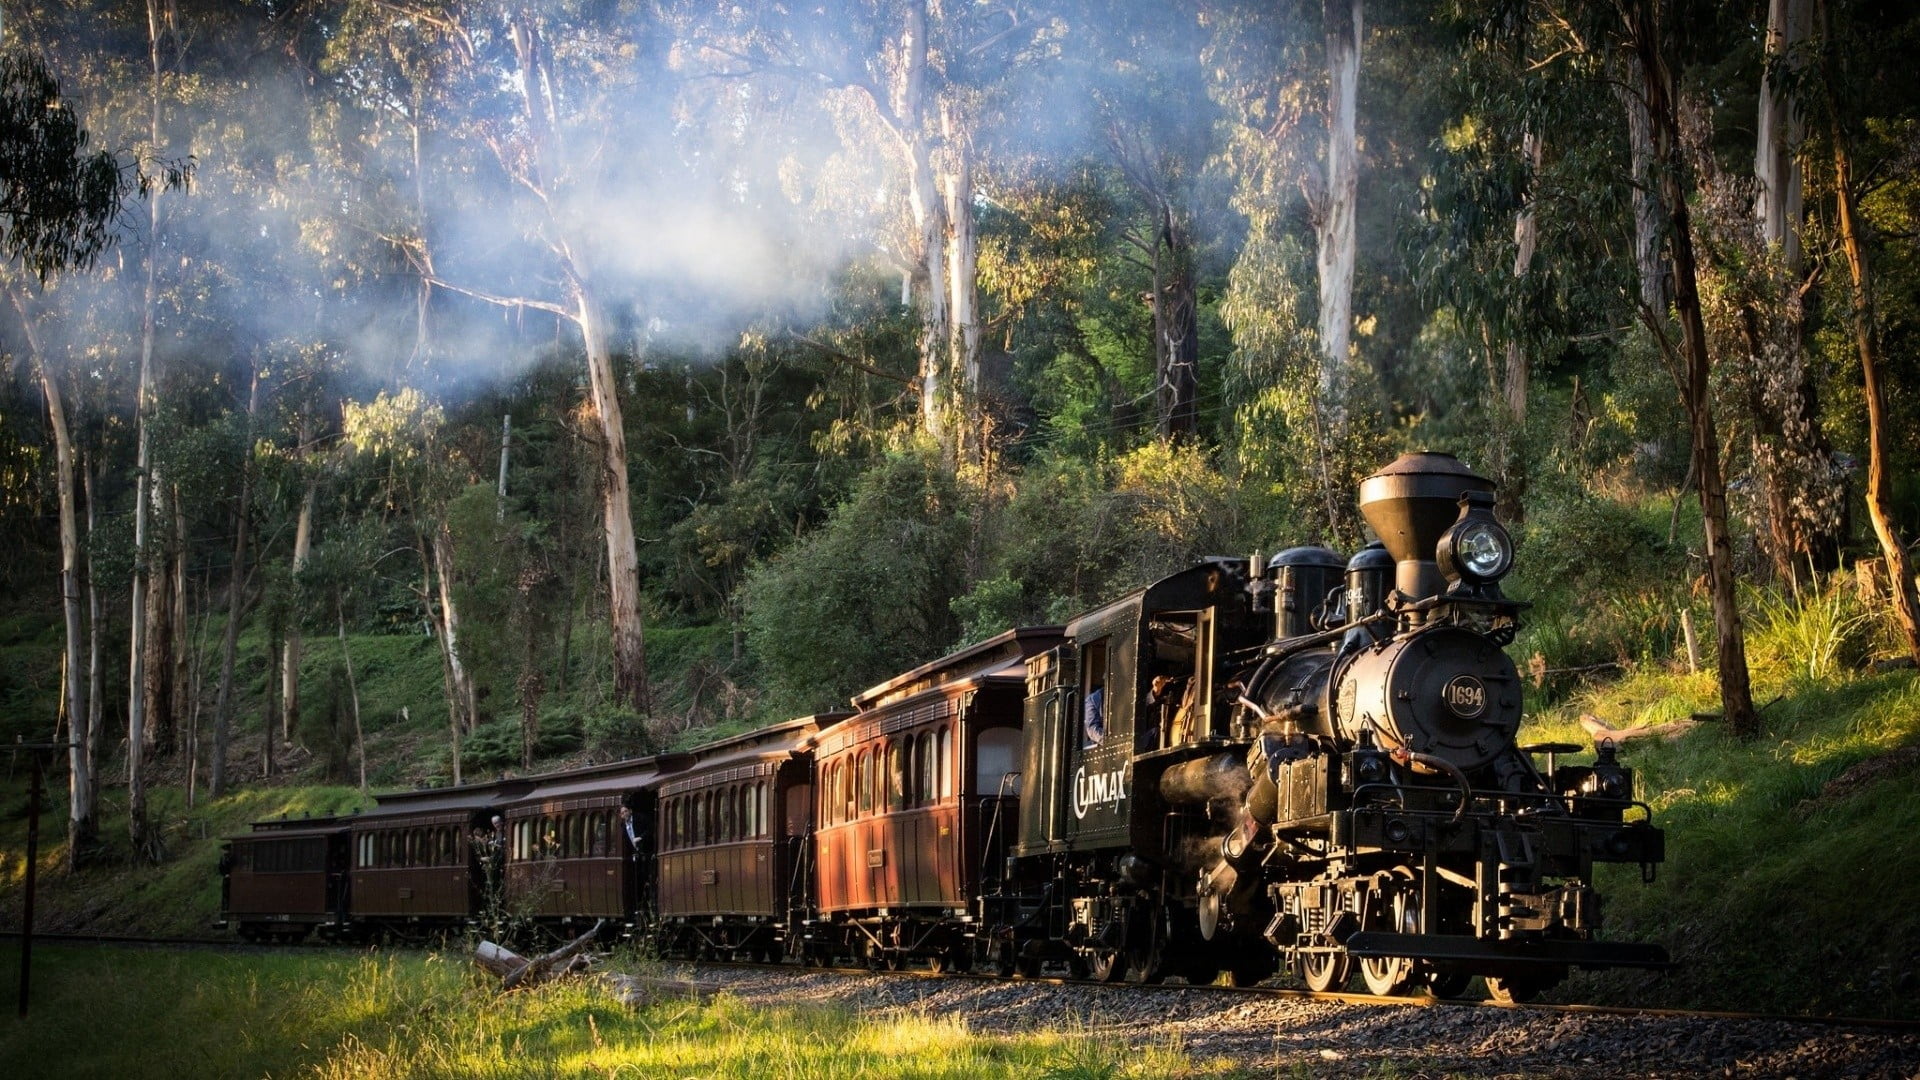 brown steam train, landscape, railway, nature, steam locomotive